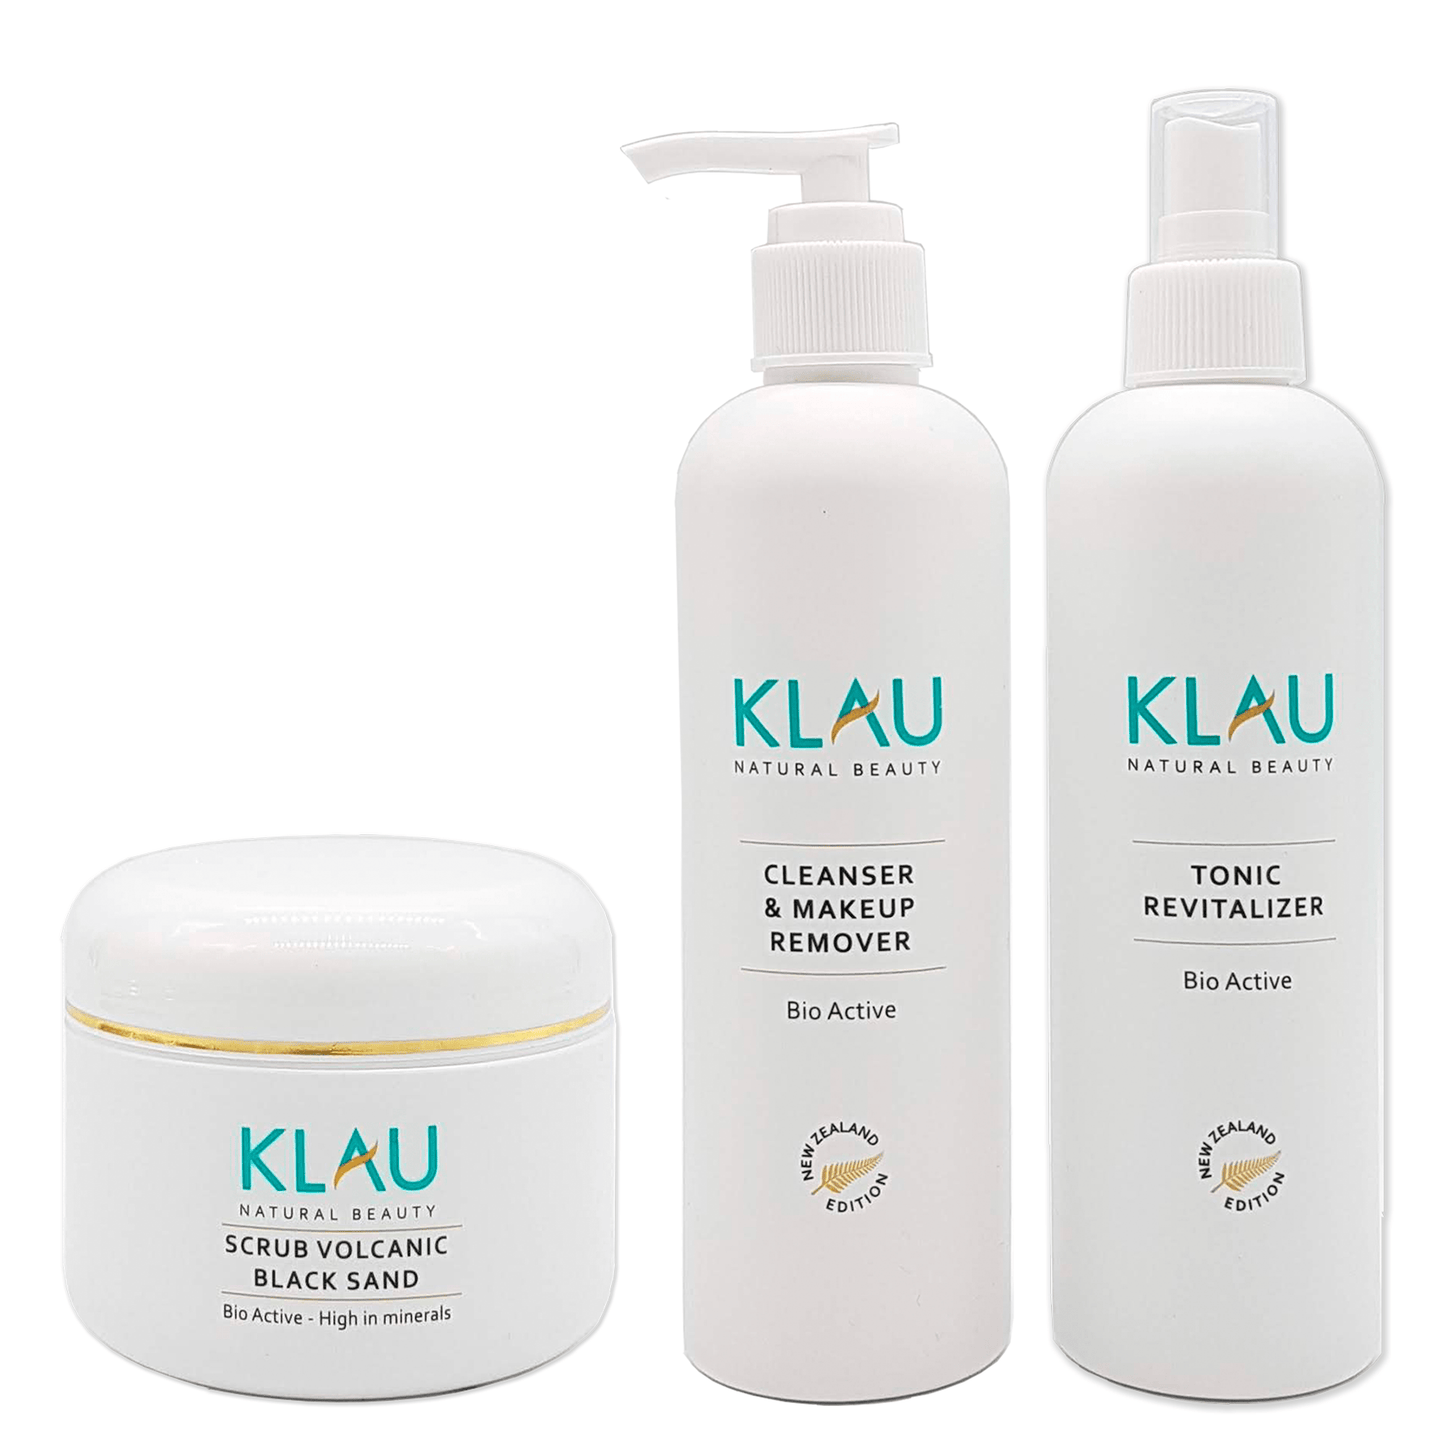 Créez votre Box - Choisissez vos 2 produits KLAU préférés